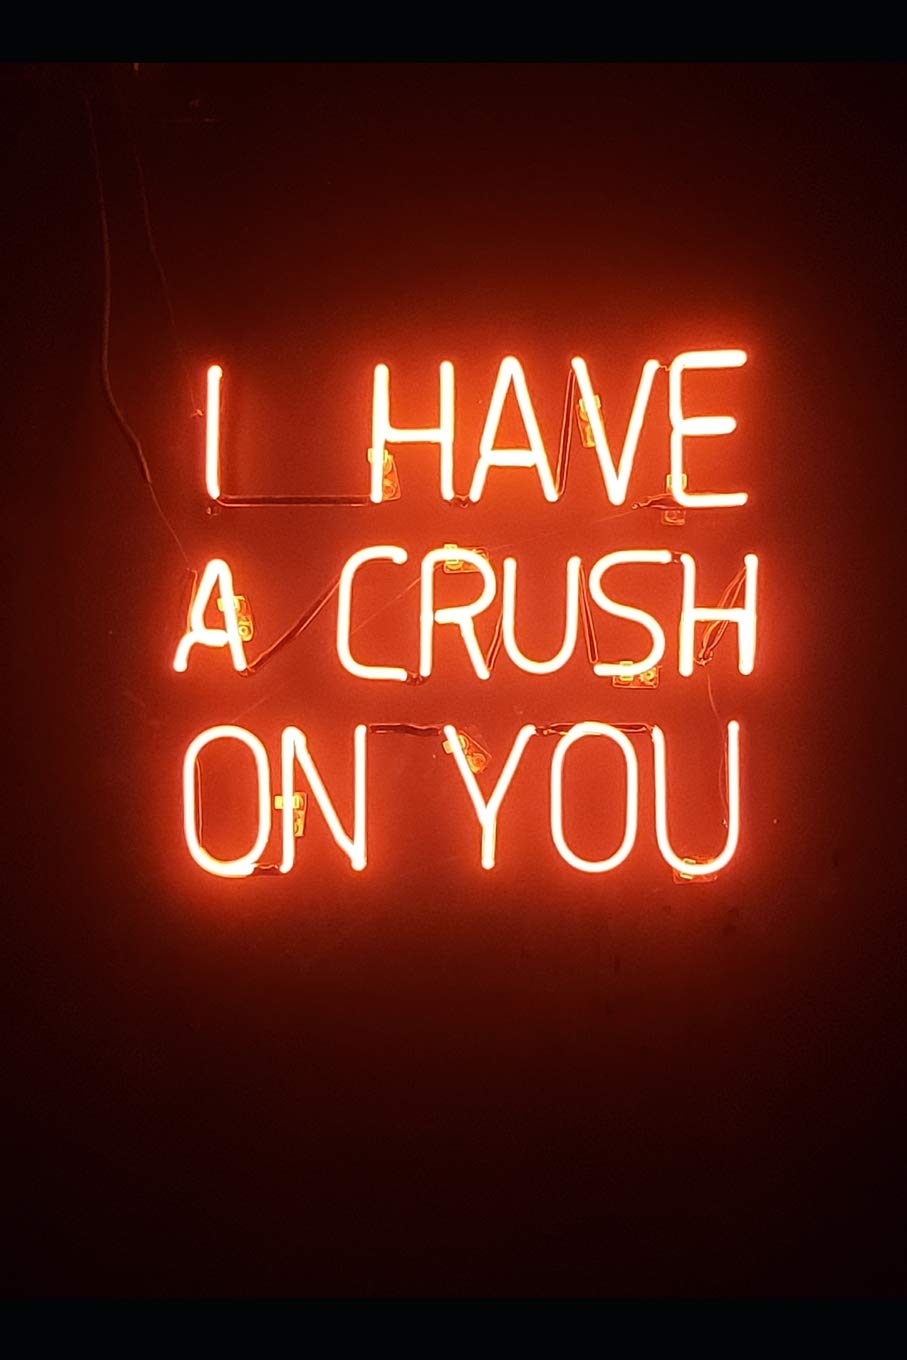 crush có nghĩa là gì